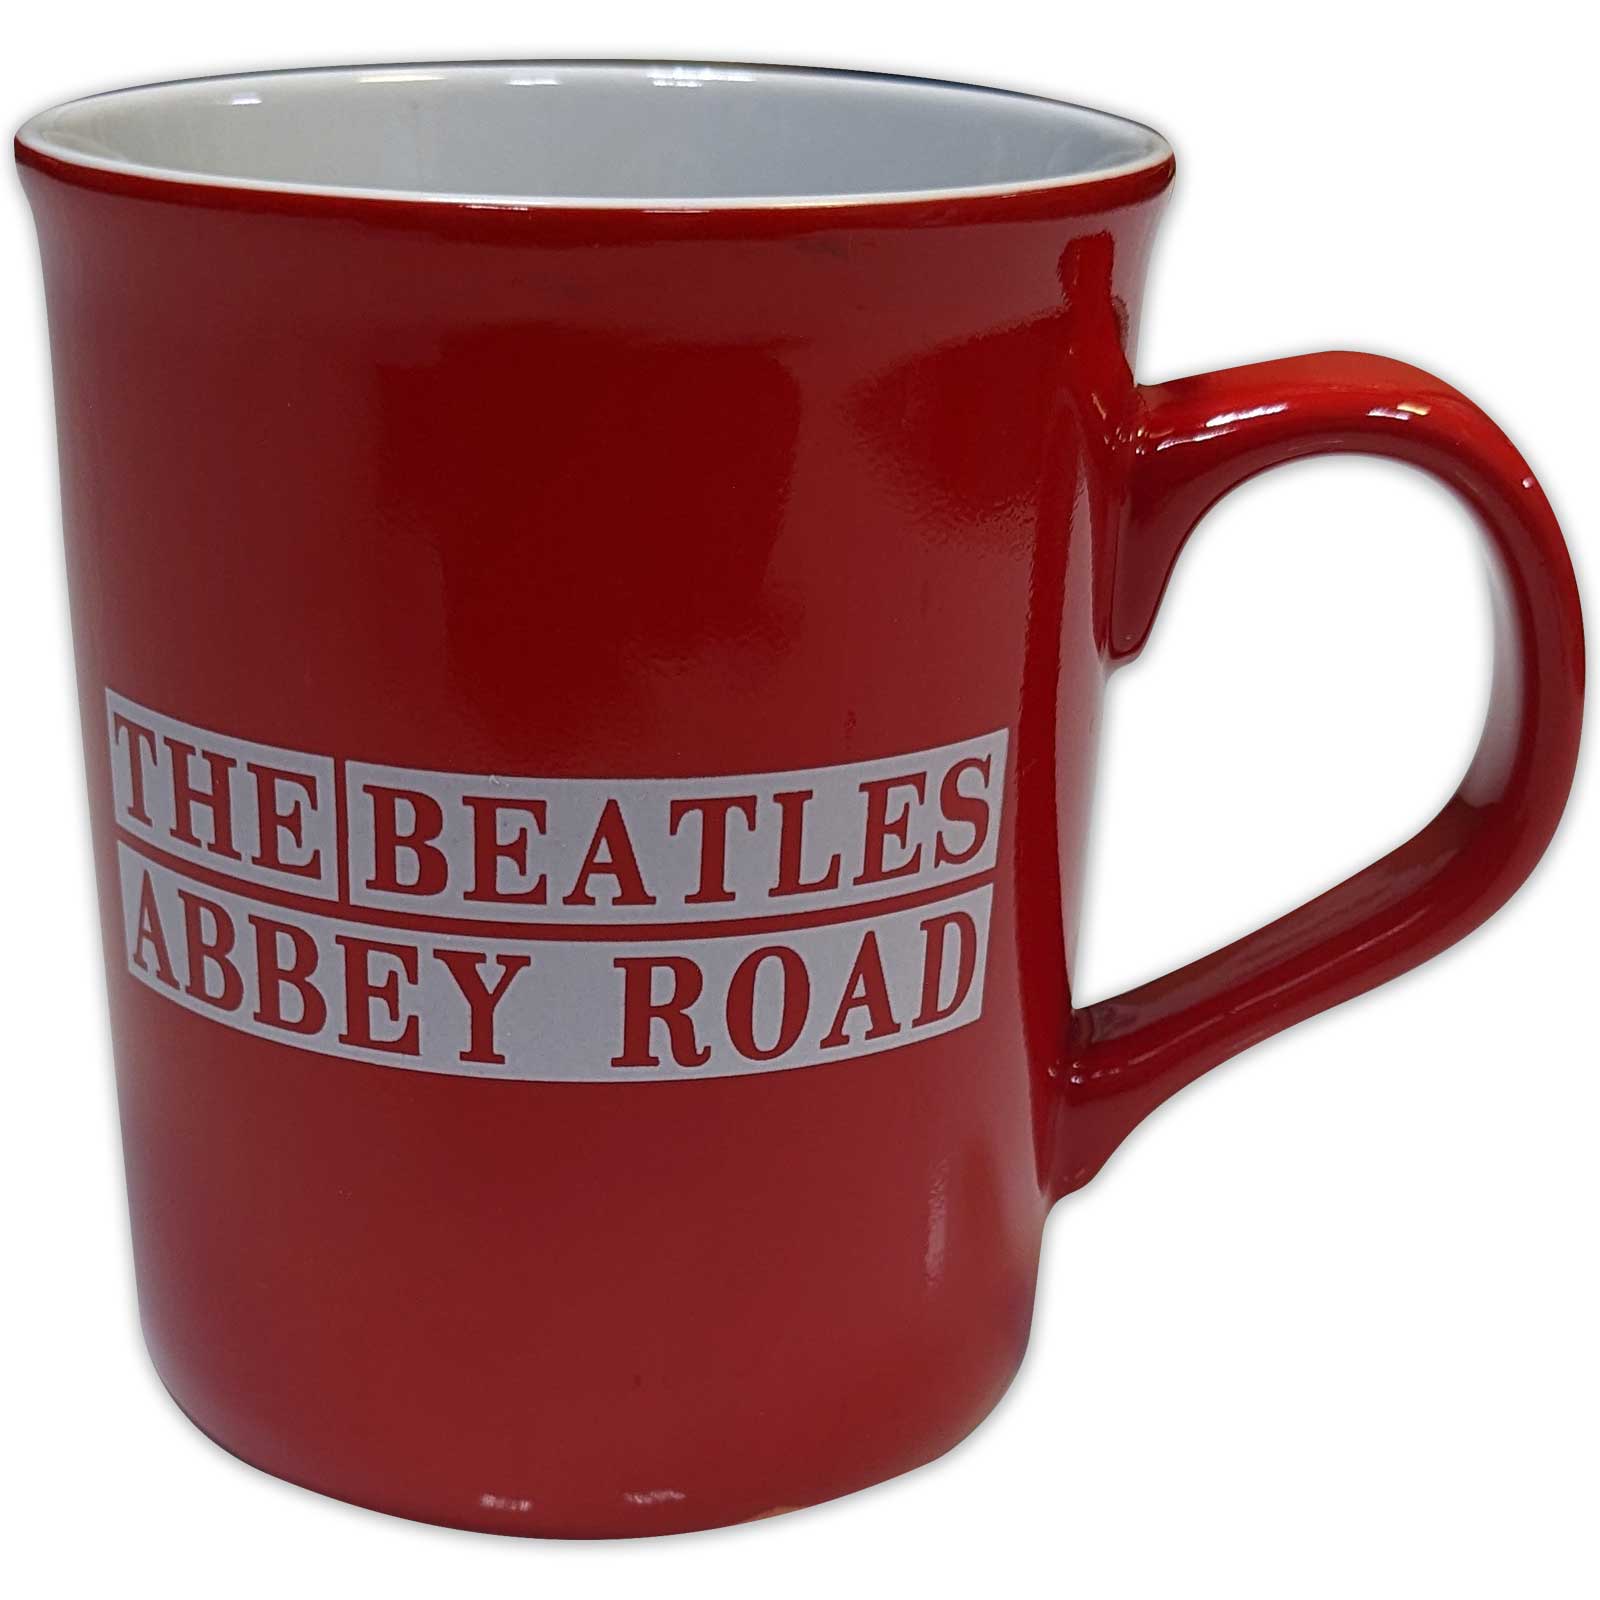 THE BEATLES ザ・ビートルズ (ABBEY ROAD発売55周年記念 ) - Abbey Road Crossing / マグカップ 【公式 / オフィシャル】